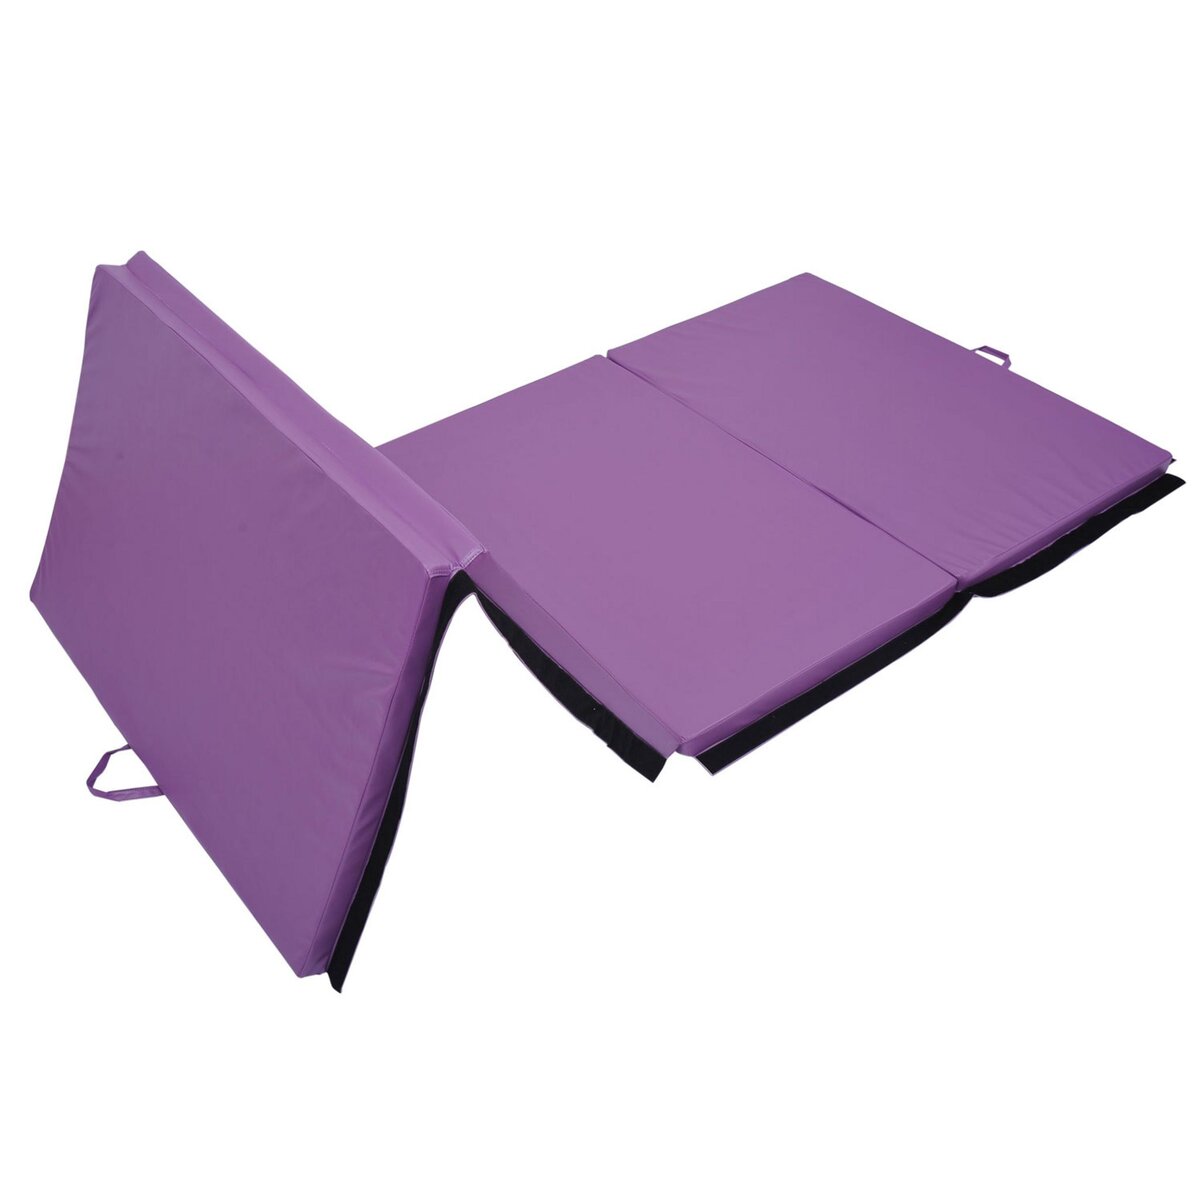 HOMCOM Tapis de sol gymnastique Fitness pliable portable rembourrage mousse  5 cm grand confort revêtement synthétique dim. 2,93L m x 1,15l m bleu pas  cher 